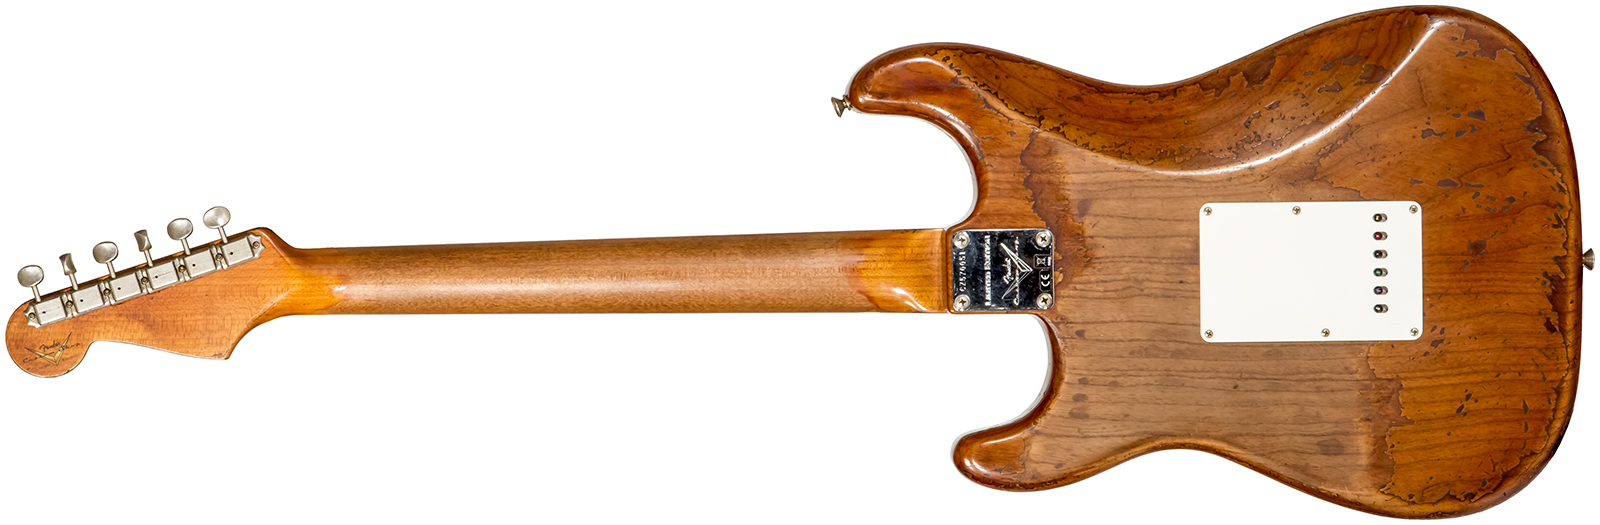 Fender Custom Shop Strat 1961 3s Trem Rw #cz570051 - Super Heavy Relic Natural - Guitare Électrique Forme Str - Variation 1